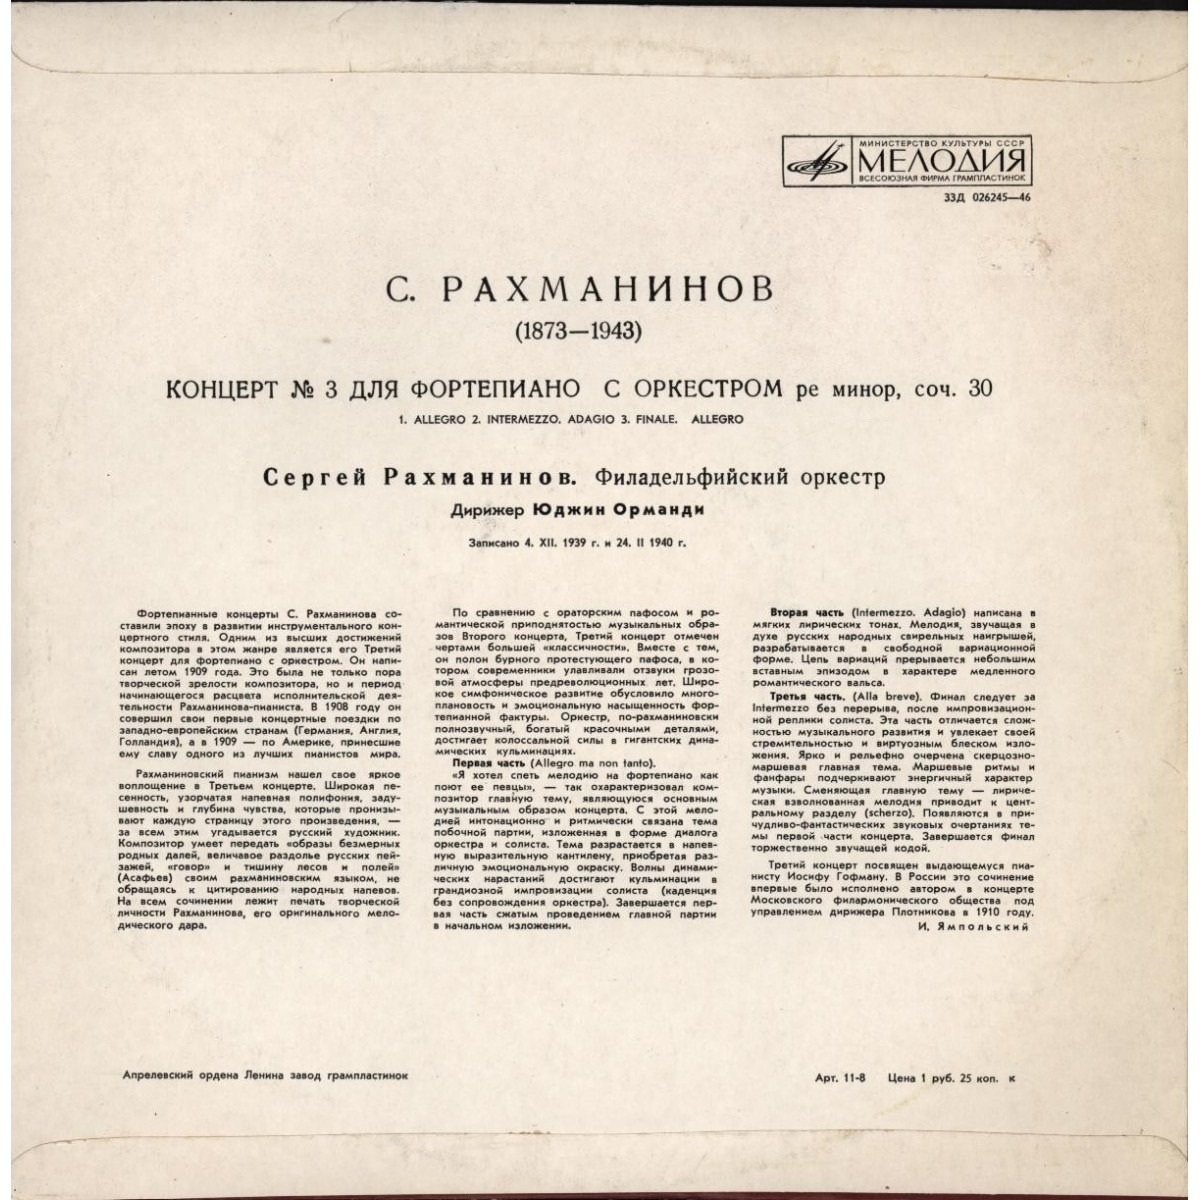 С. Рахманинов: Концерт № 3 для ф-но с оркестром (С. Рахманинов, Ю. Орманди)